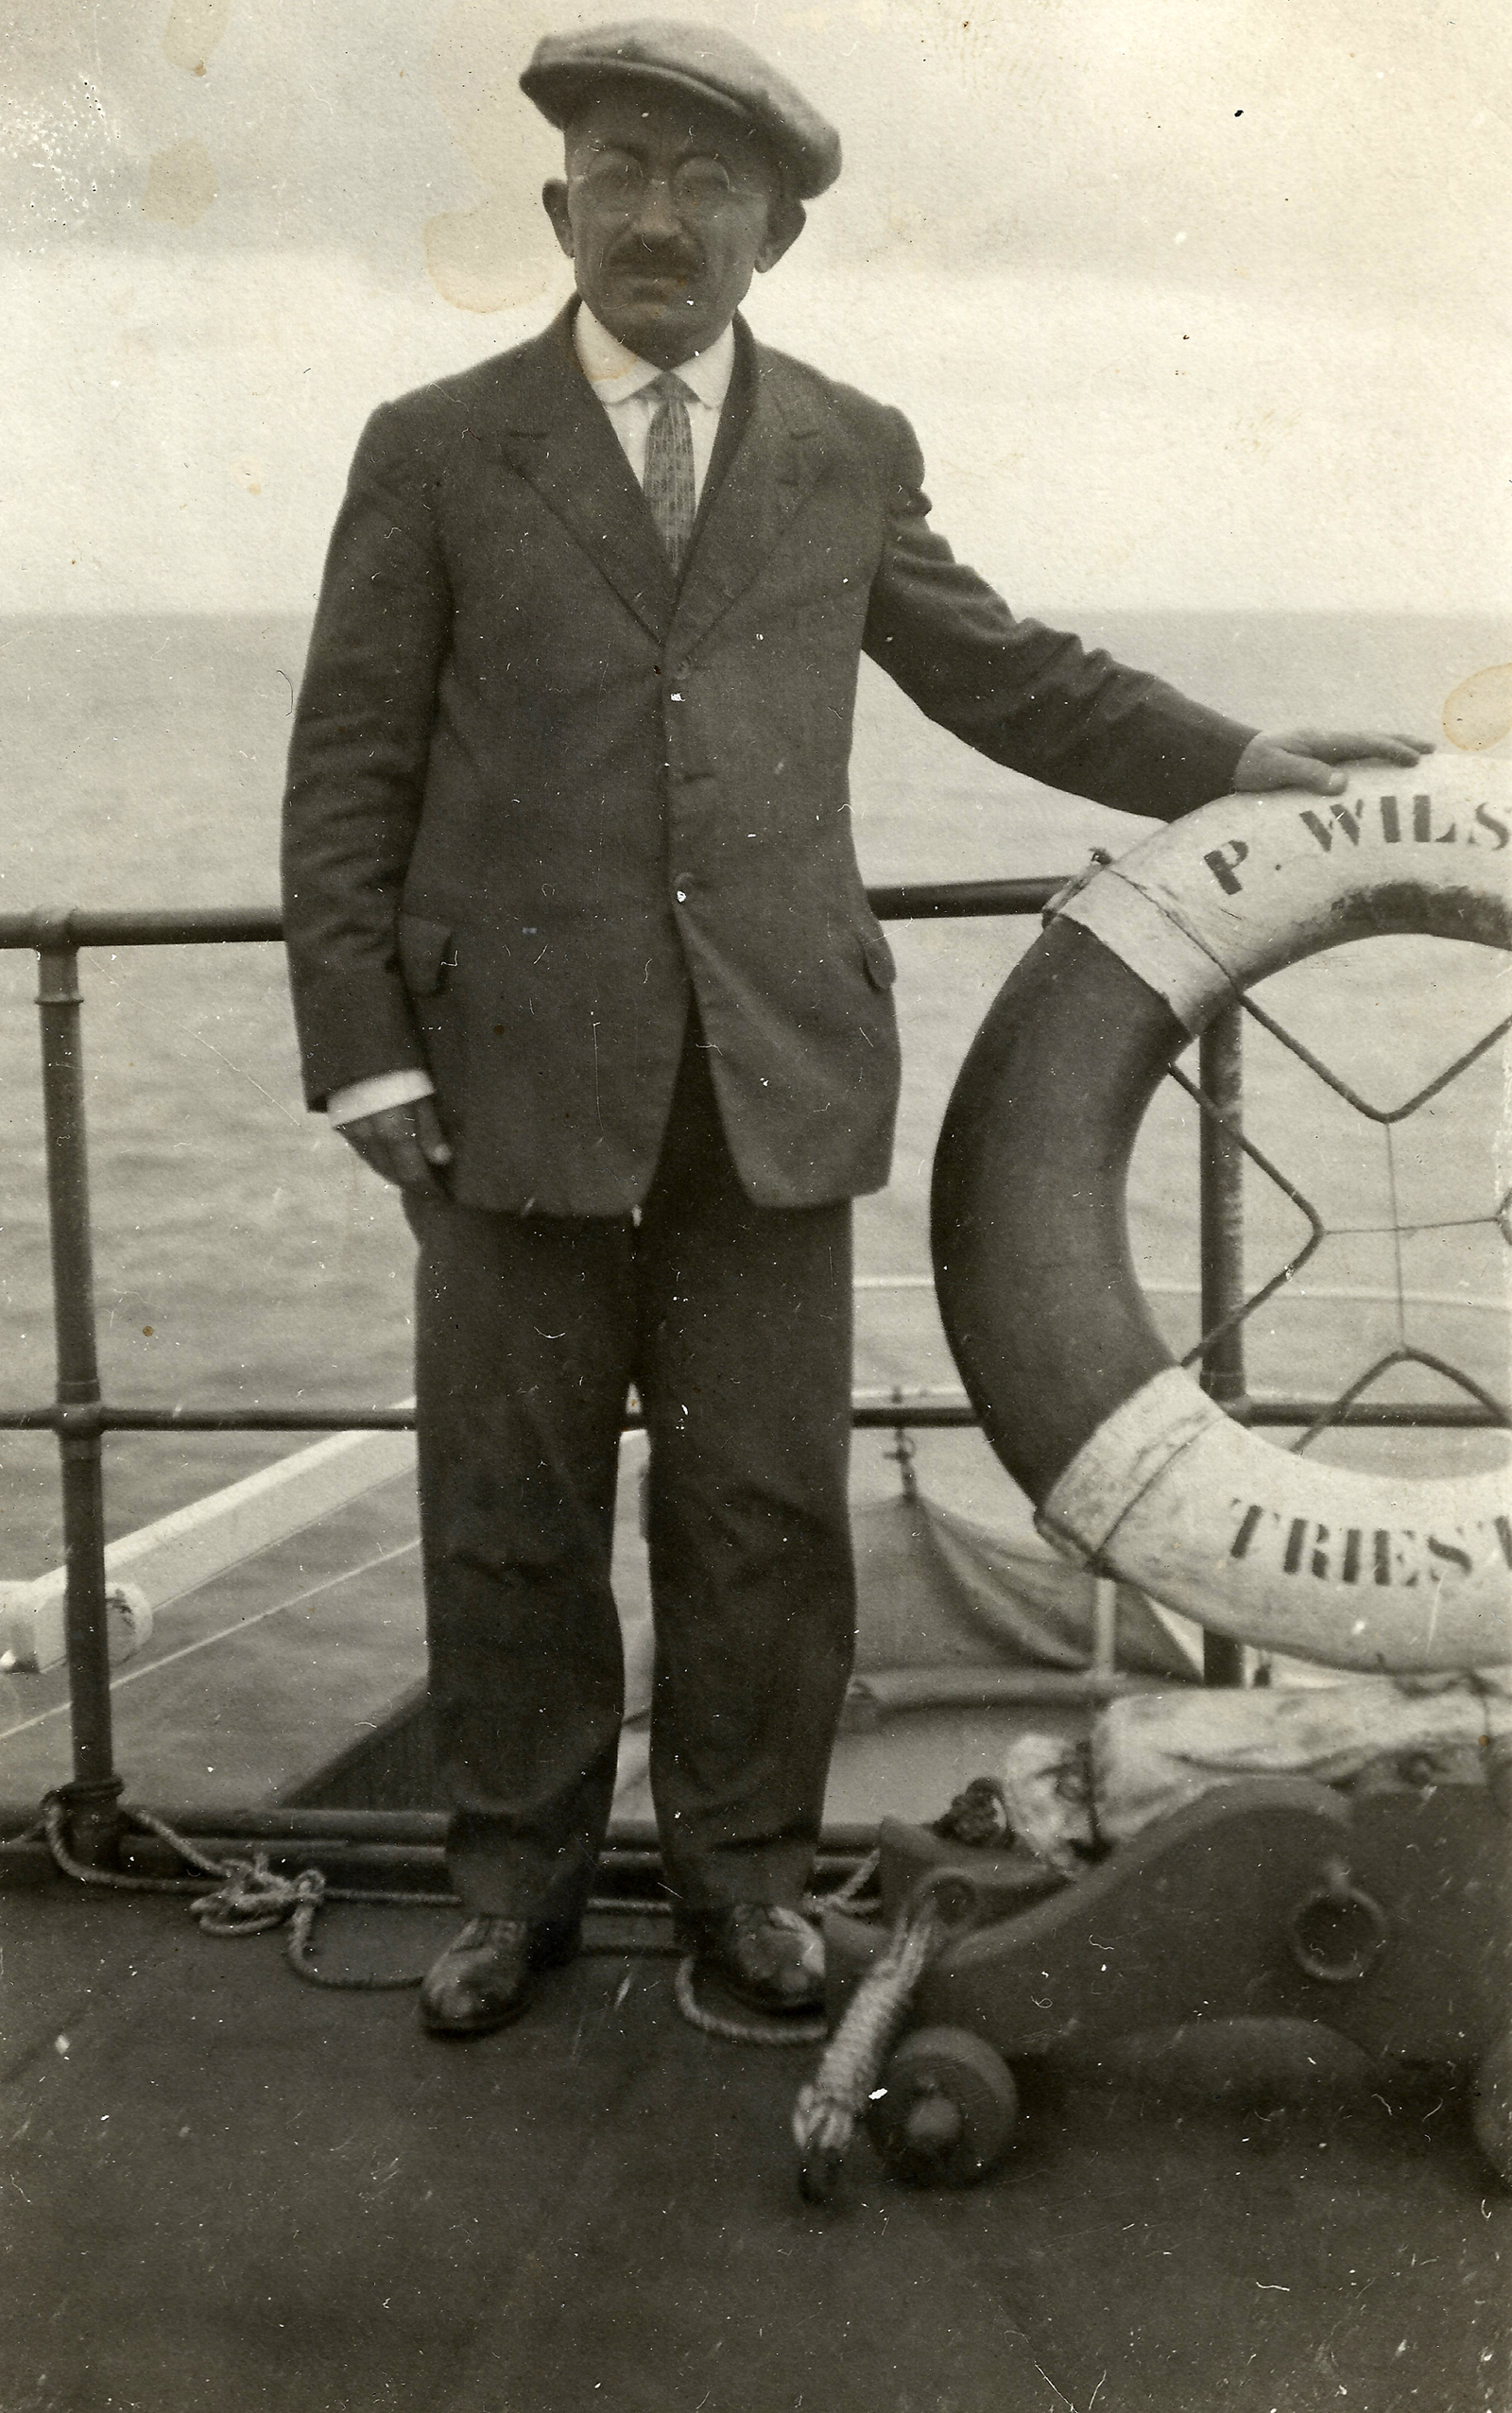 homem com vestes formais dentro de um barco, ao seu lado uma boia de duas cores, escura e clara. Foto preto e branca, ao fundo pode se visualizar o oceano